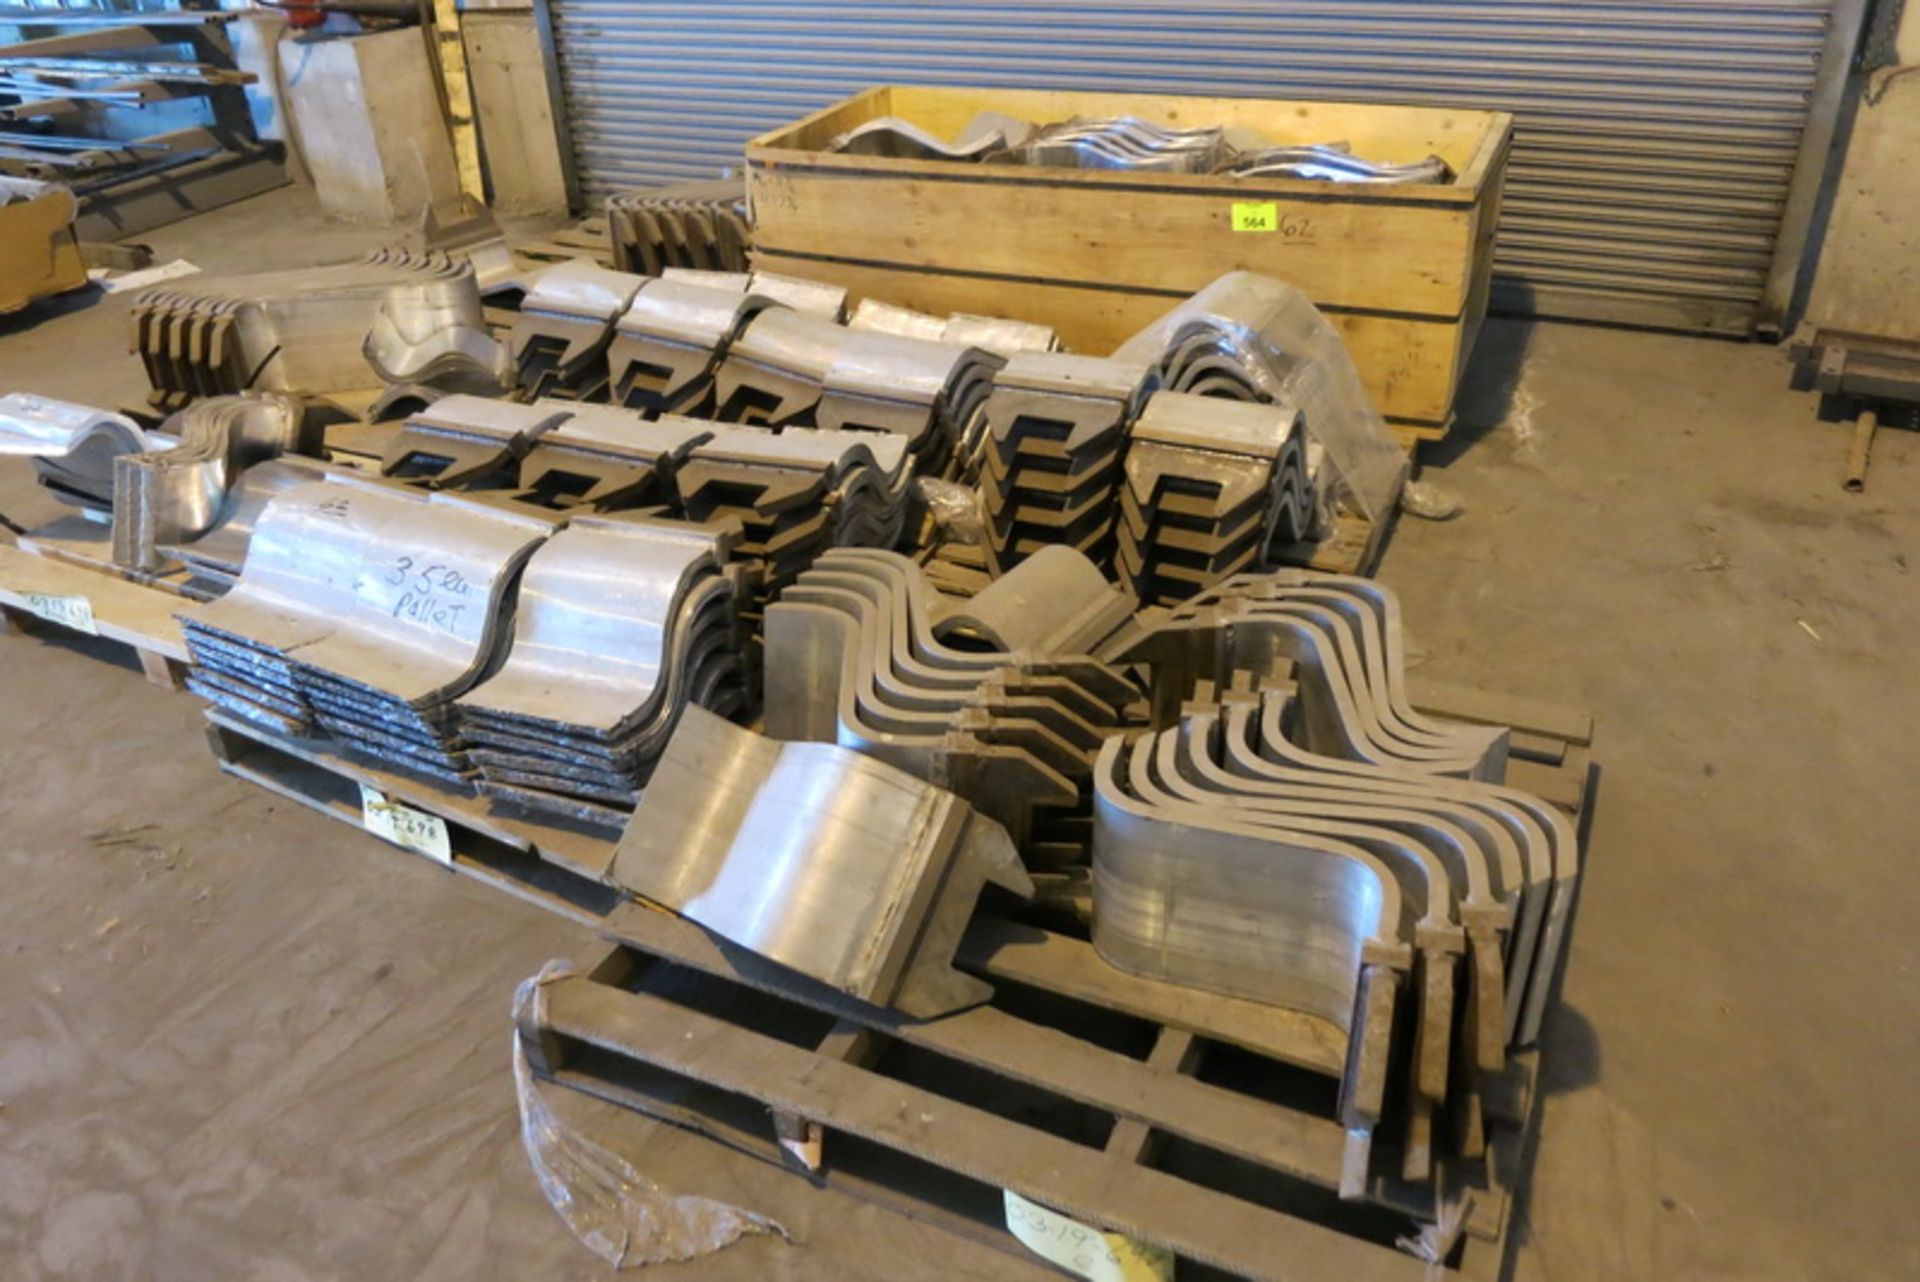 [Lot] Aluminum S-risers, 7 pallets, 1 crate, 137 pieces